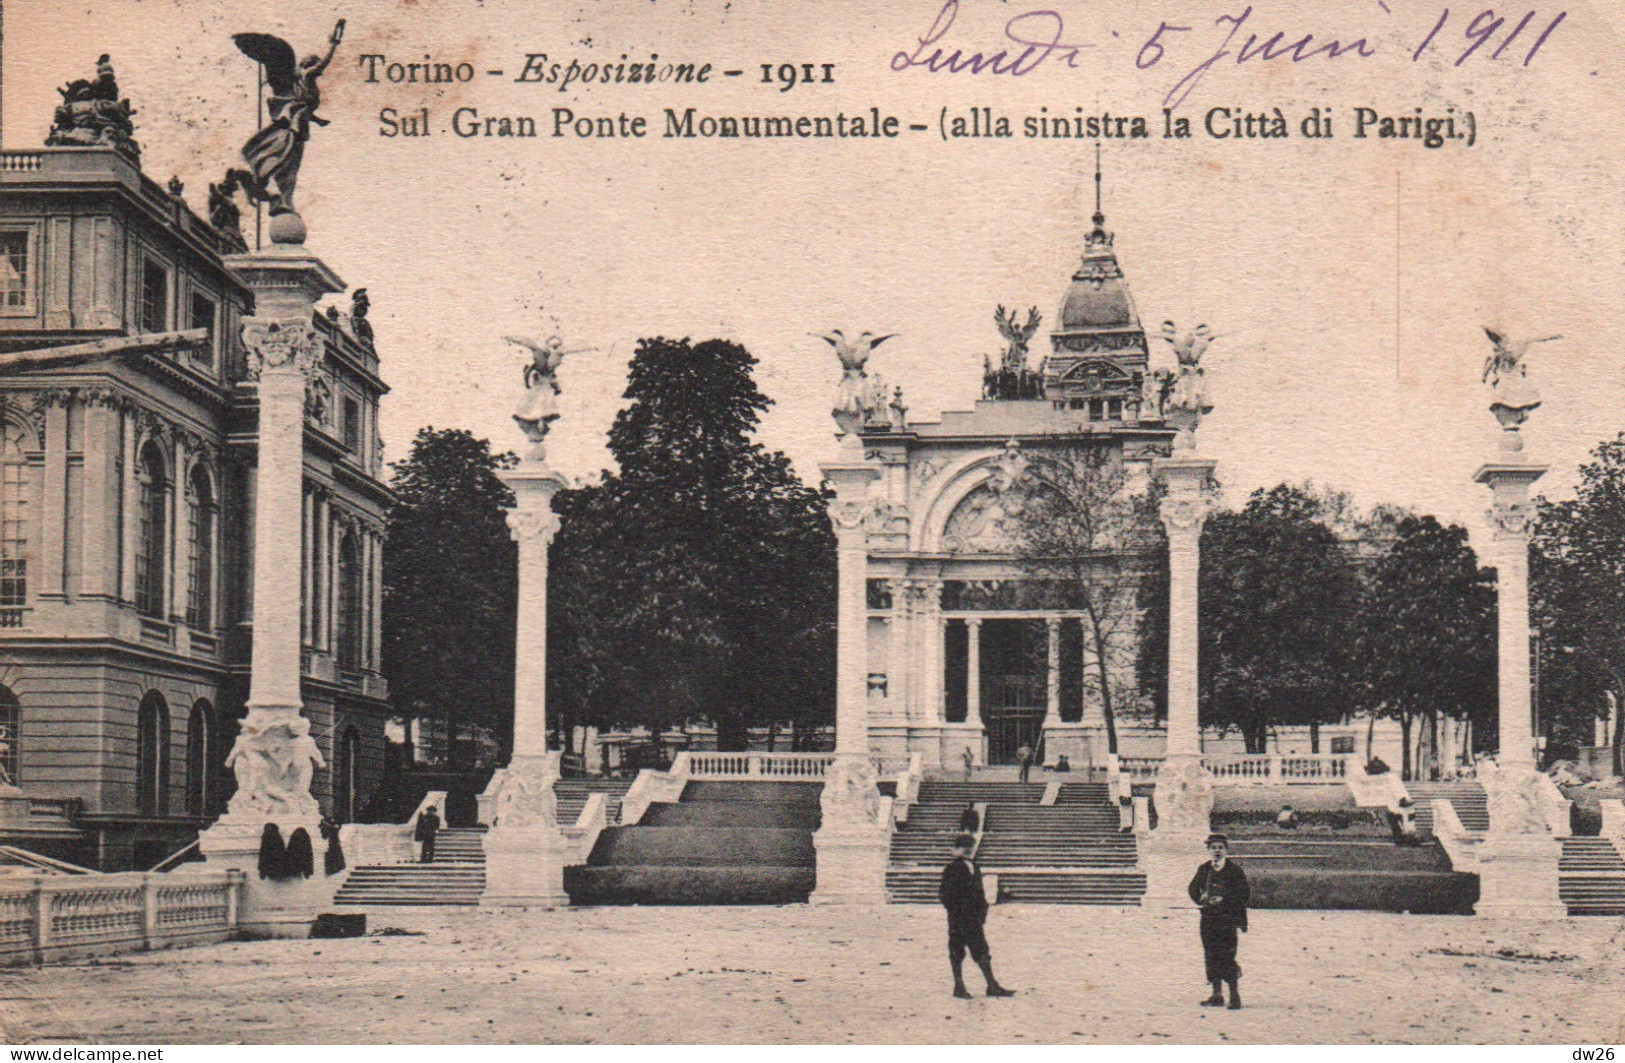 Torino (Turin) Esposizione 1911 - Sul Gran Ponte Monumentale (le Pont, Alla Sinistra La Città Di Parigi) - Exhibitions